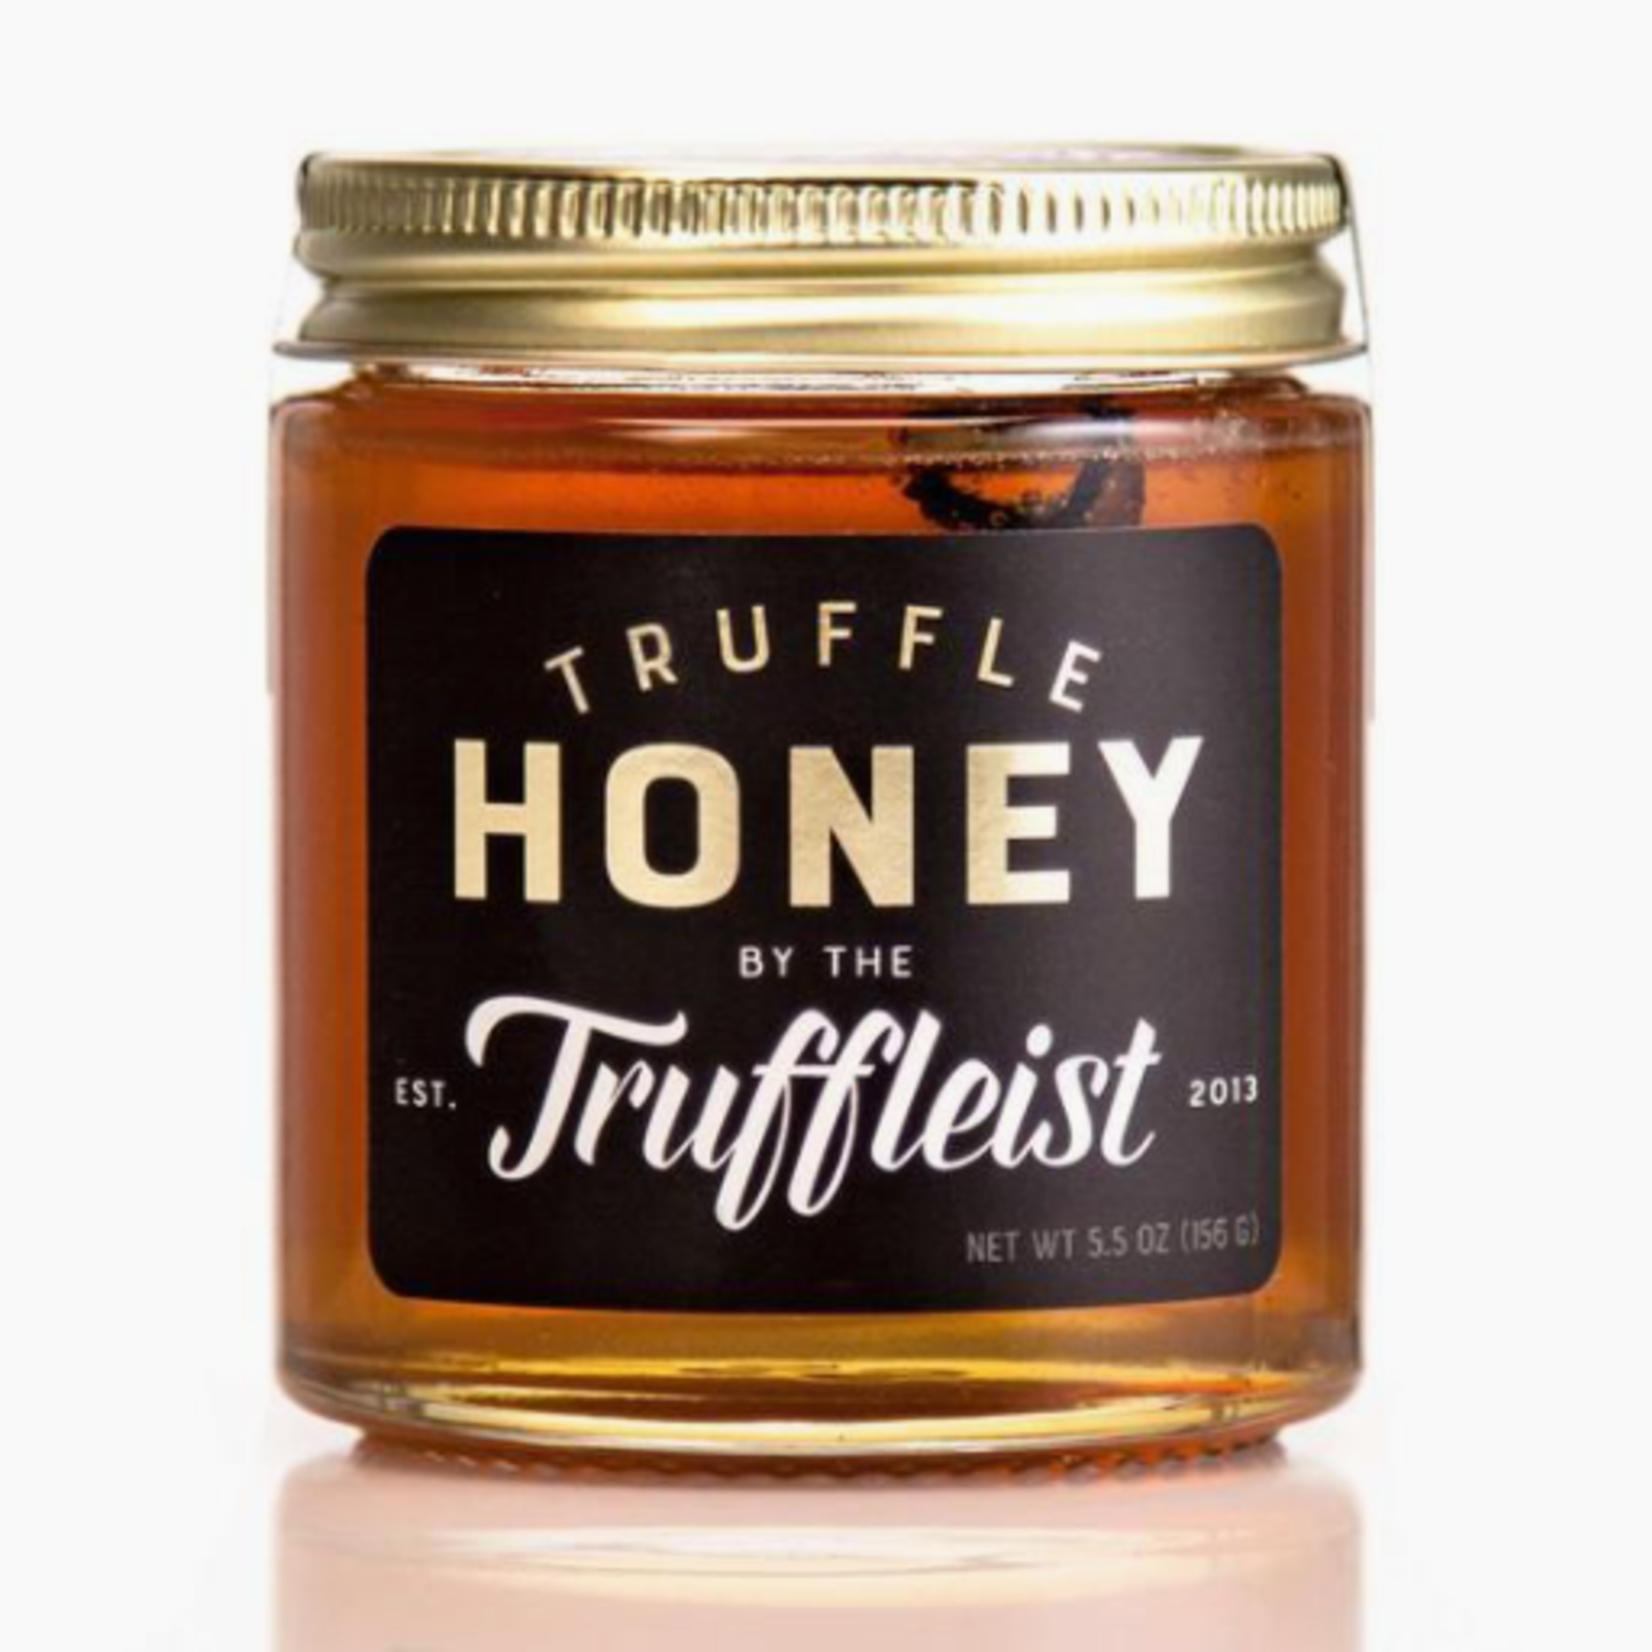 The Truffleist Truffleist Truffle Honey